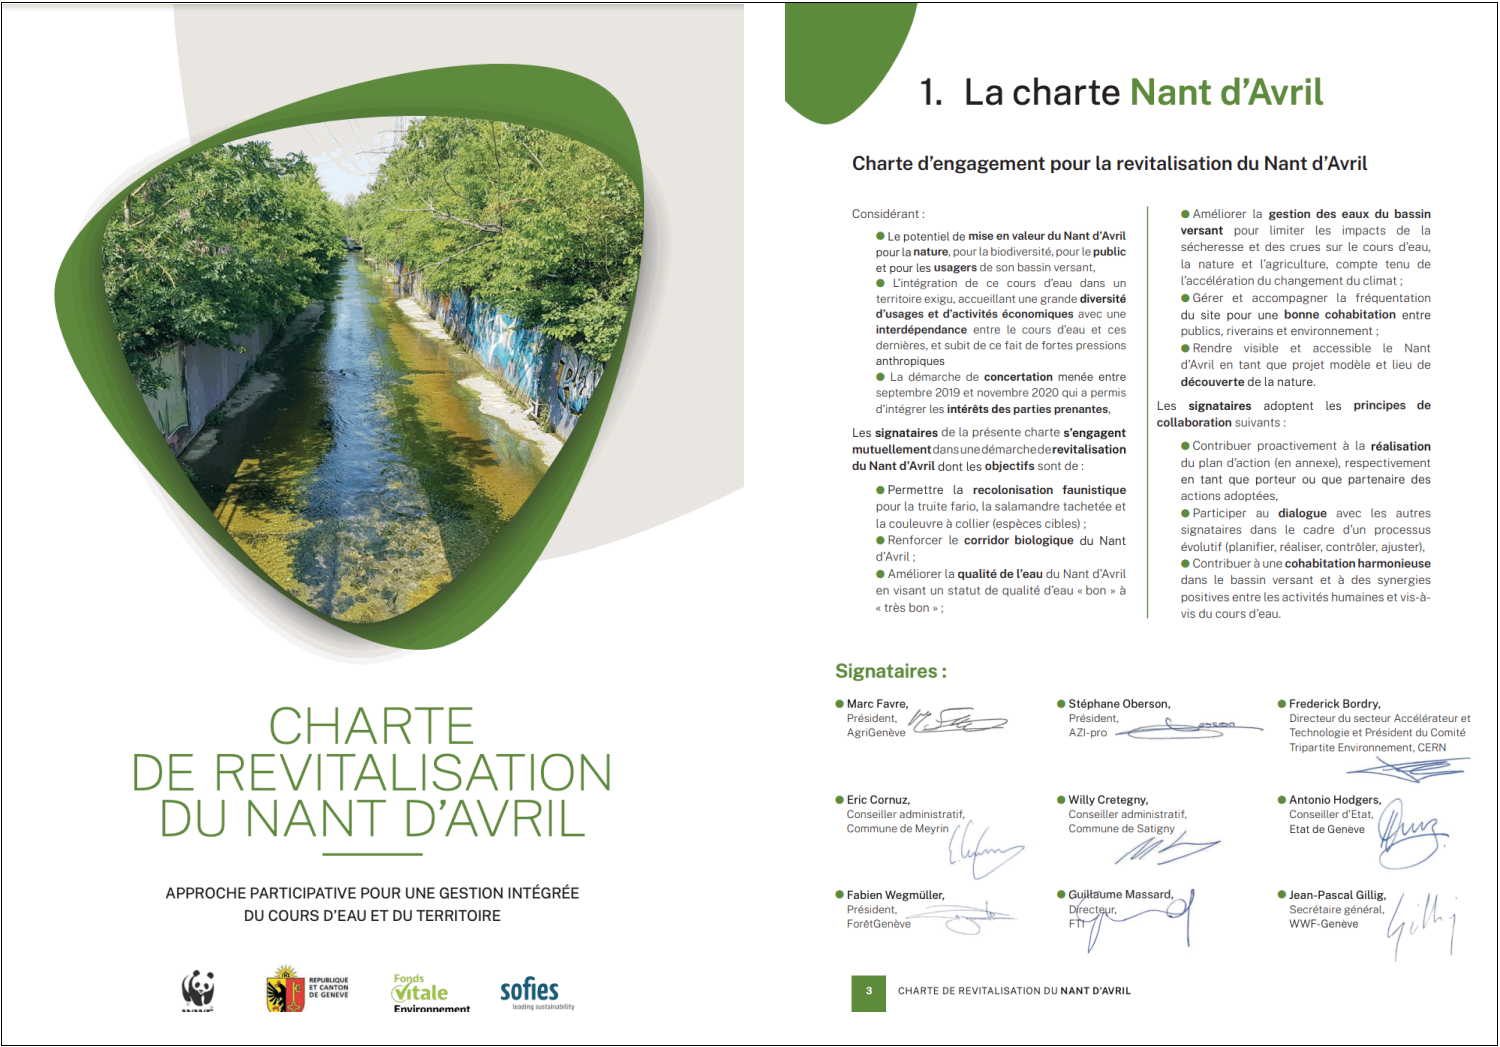 Charter for Nant d'Avril